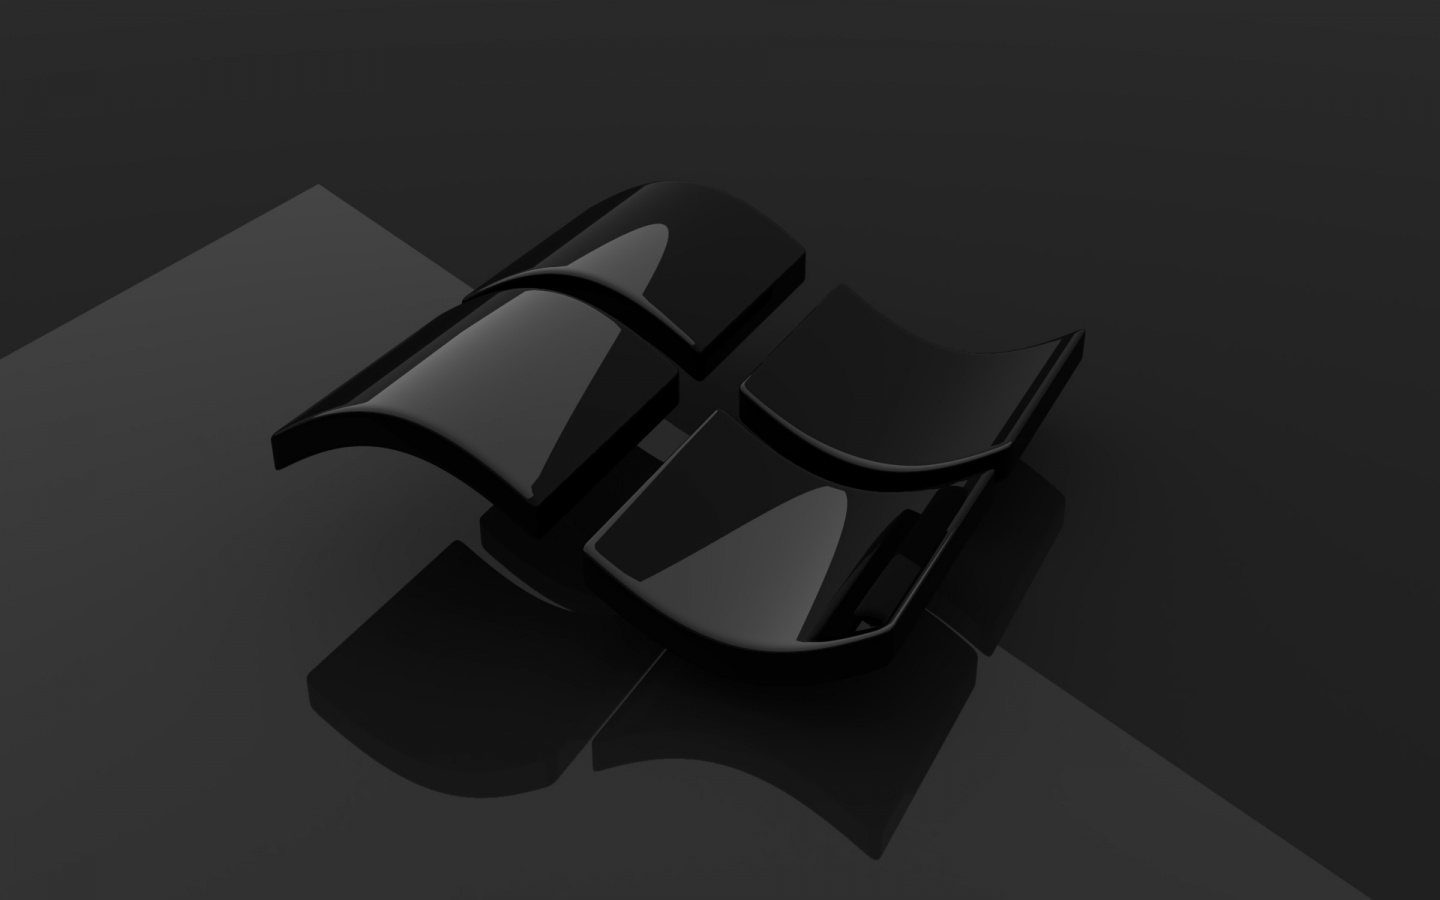 Tải ngay nền Desktop Windows 10 Black Logo HD miễn phí để mang đến một diện mạo mới cho máy tính của bạn! Với chất lượng hình ảnh cao cùng màu sắc đậm nét, bức ảnh đem đến sự sang trọng cho không gian làm việc của bạn. Đừng bỏ lỡ cơ hội này và tải ngay!